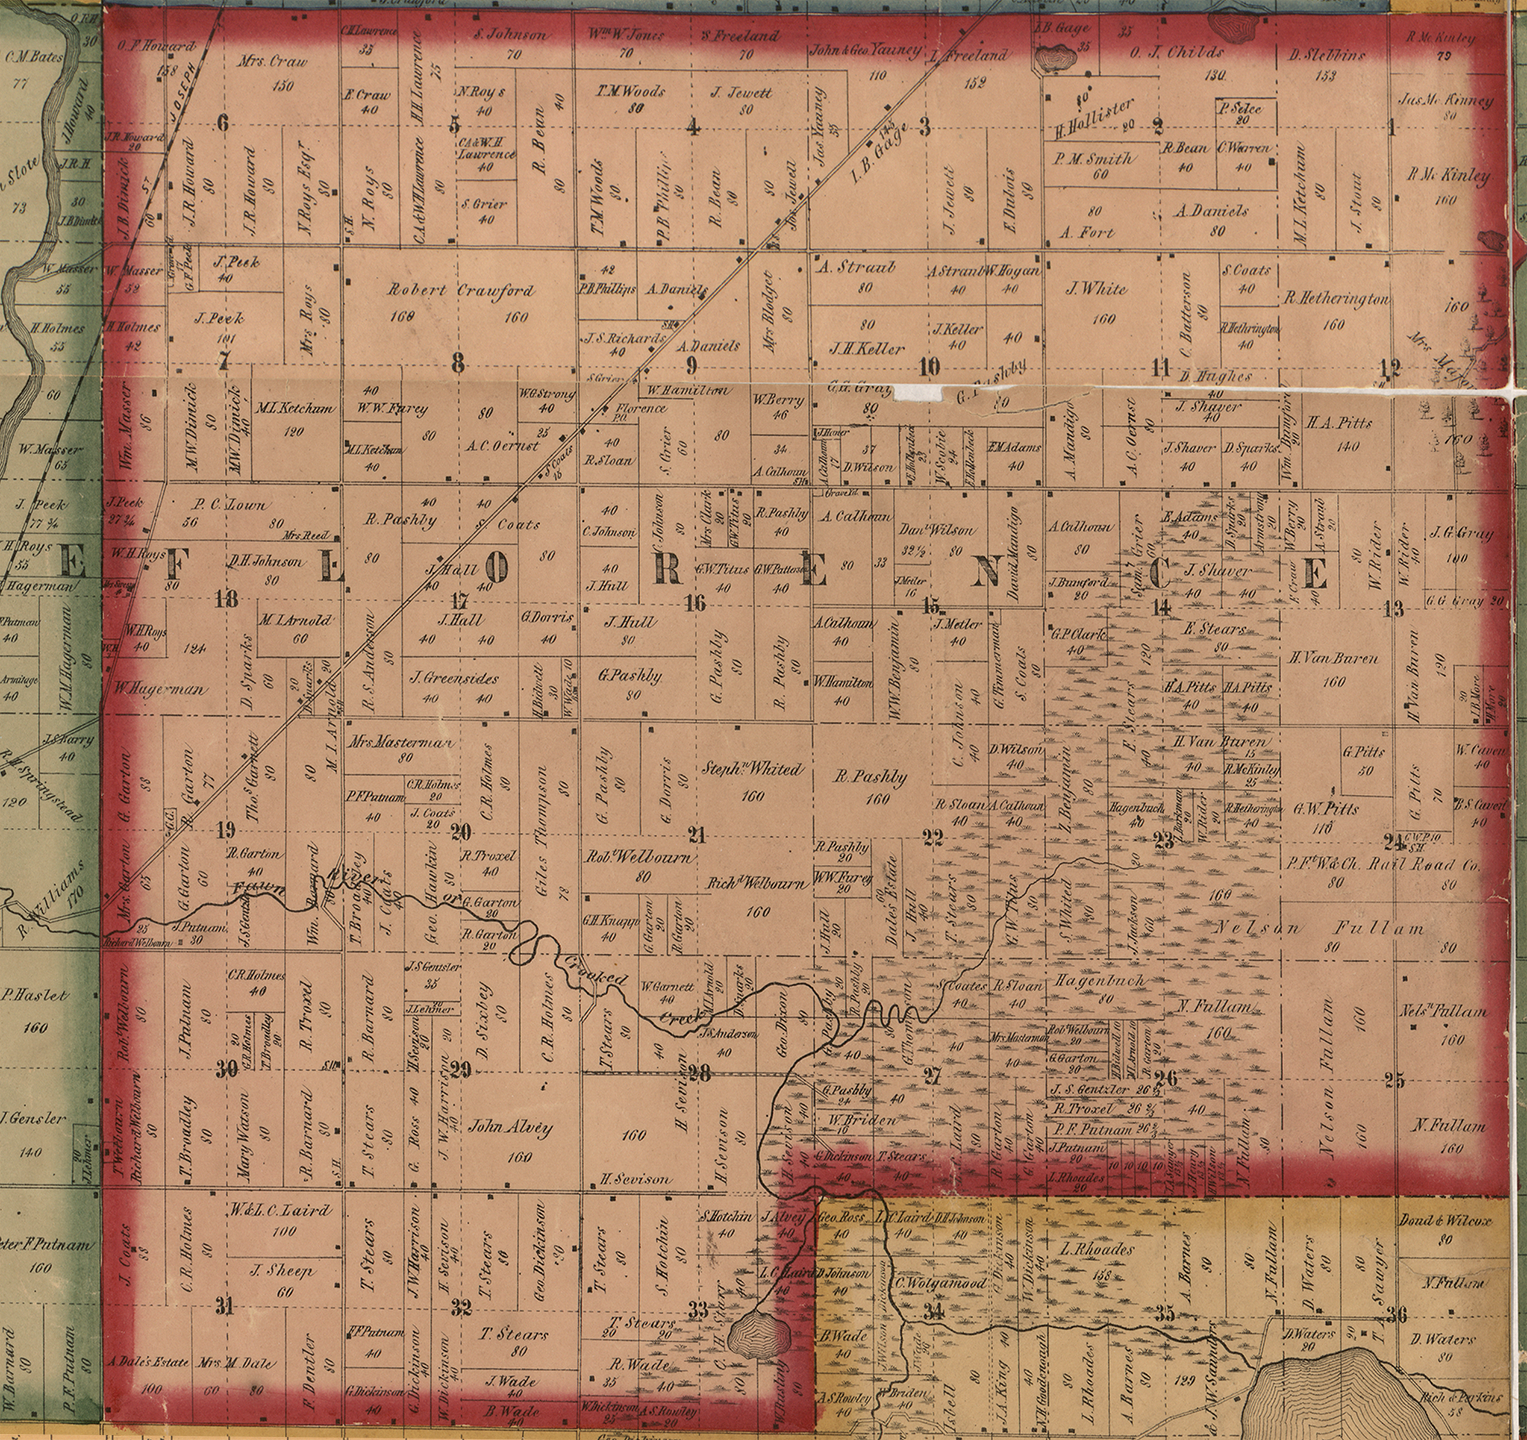 1858 Florence Township Michigan landownership map